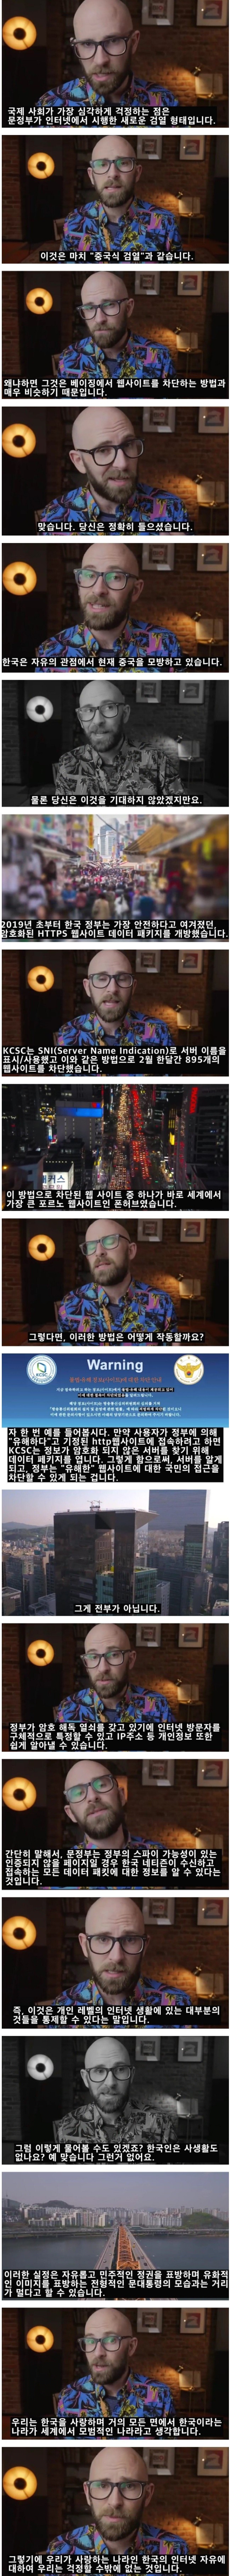 한국의 인터넷 검열에 대한 미국인의 생각